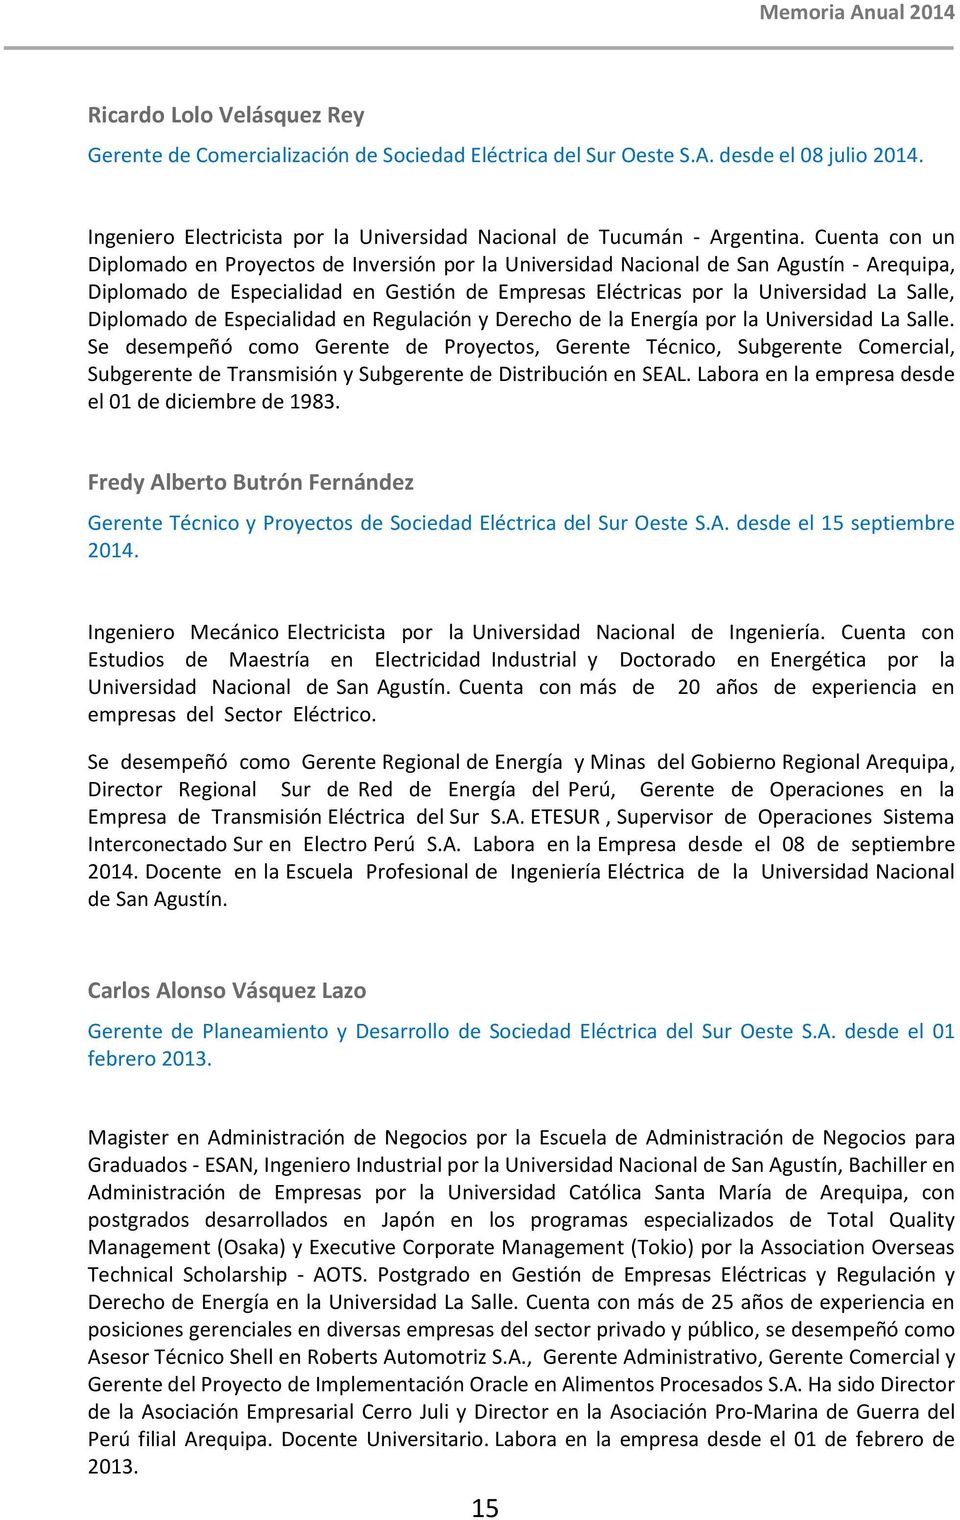 Diplomado de Especialidad en Regulación y Derecho de la Energía por la Universidad La Salle.